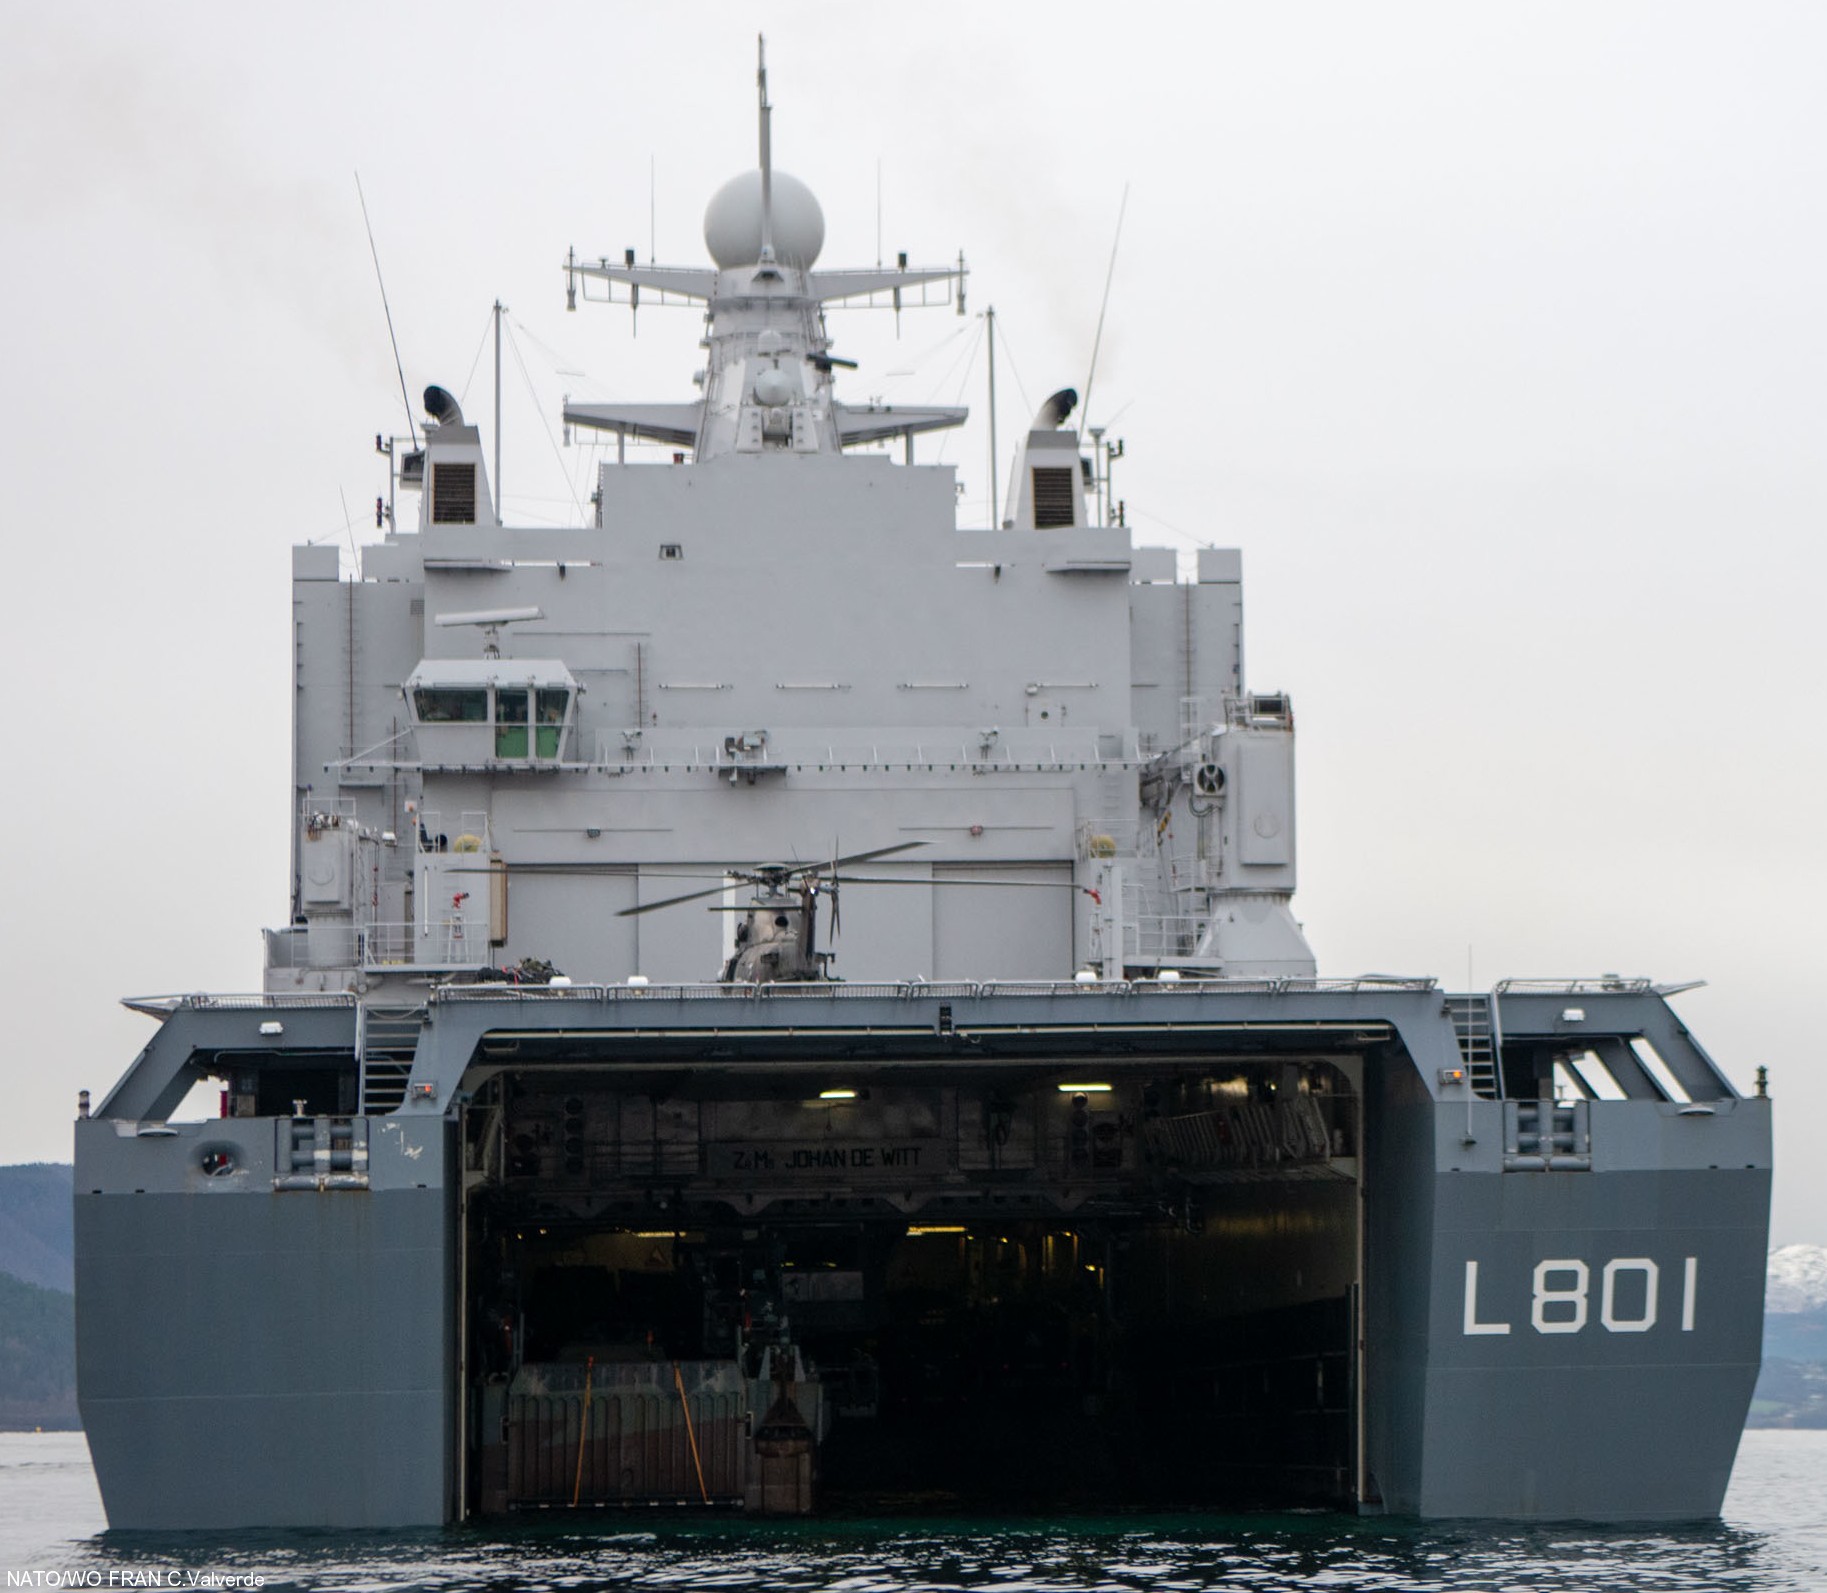 l-801 hnlms johan de witt amphibious ship landing platform dock lpd royal netherlands navy 15 well deck